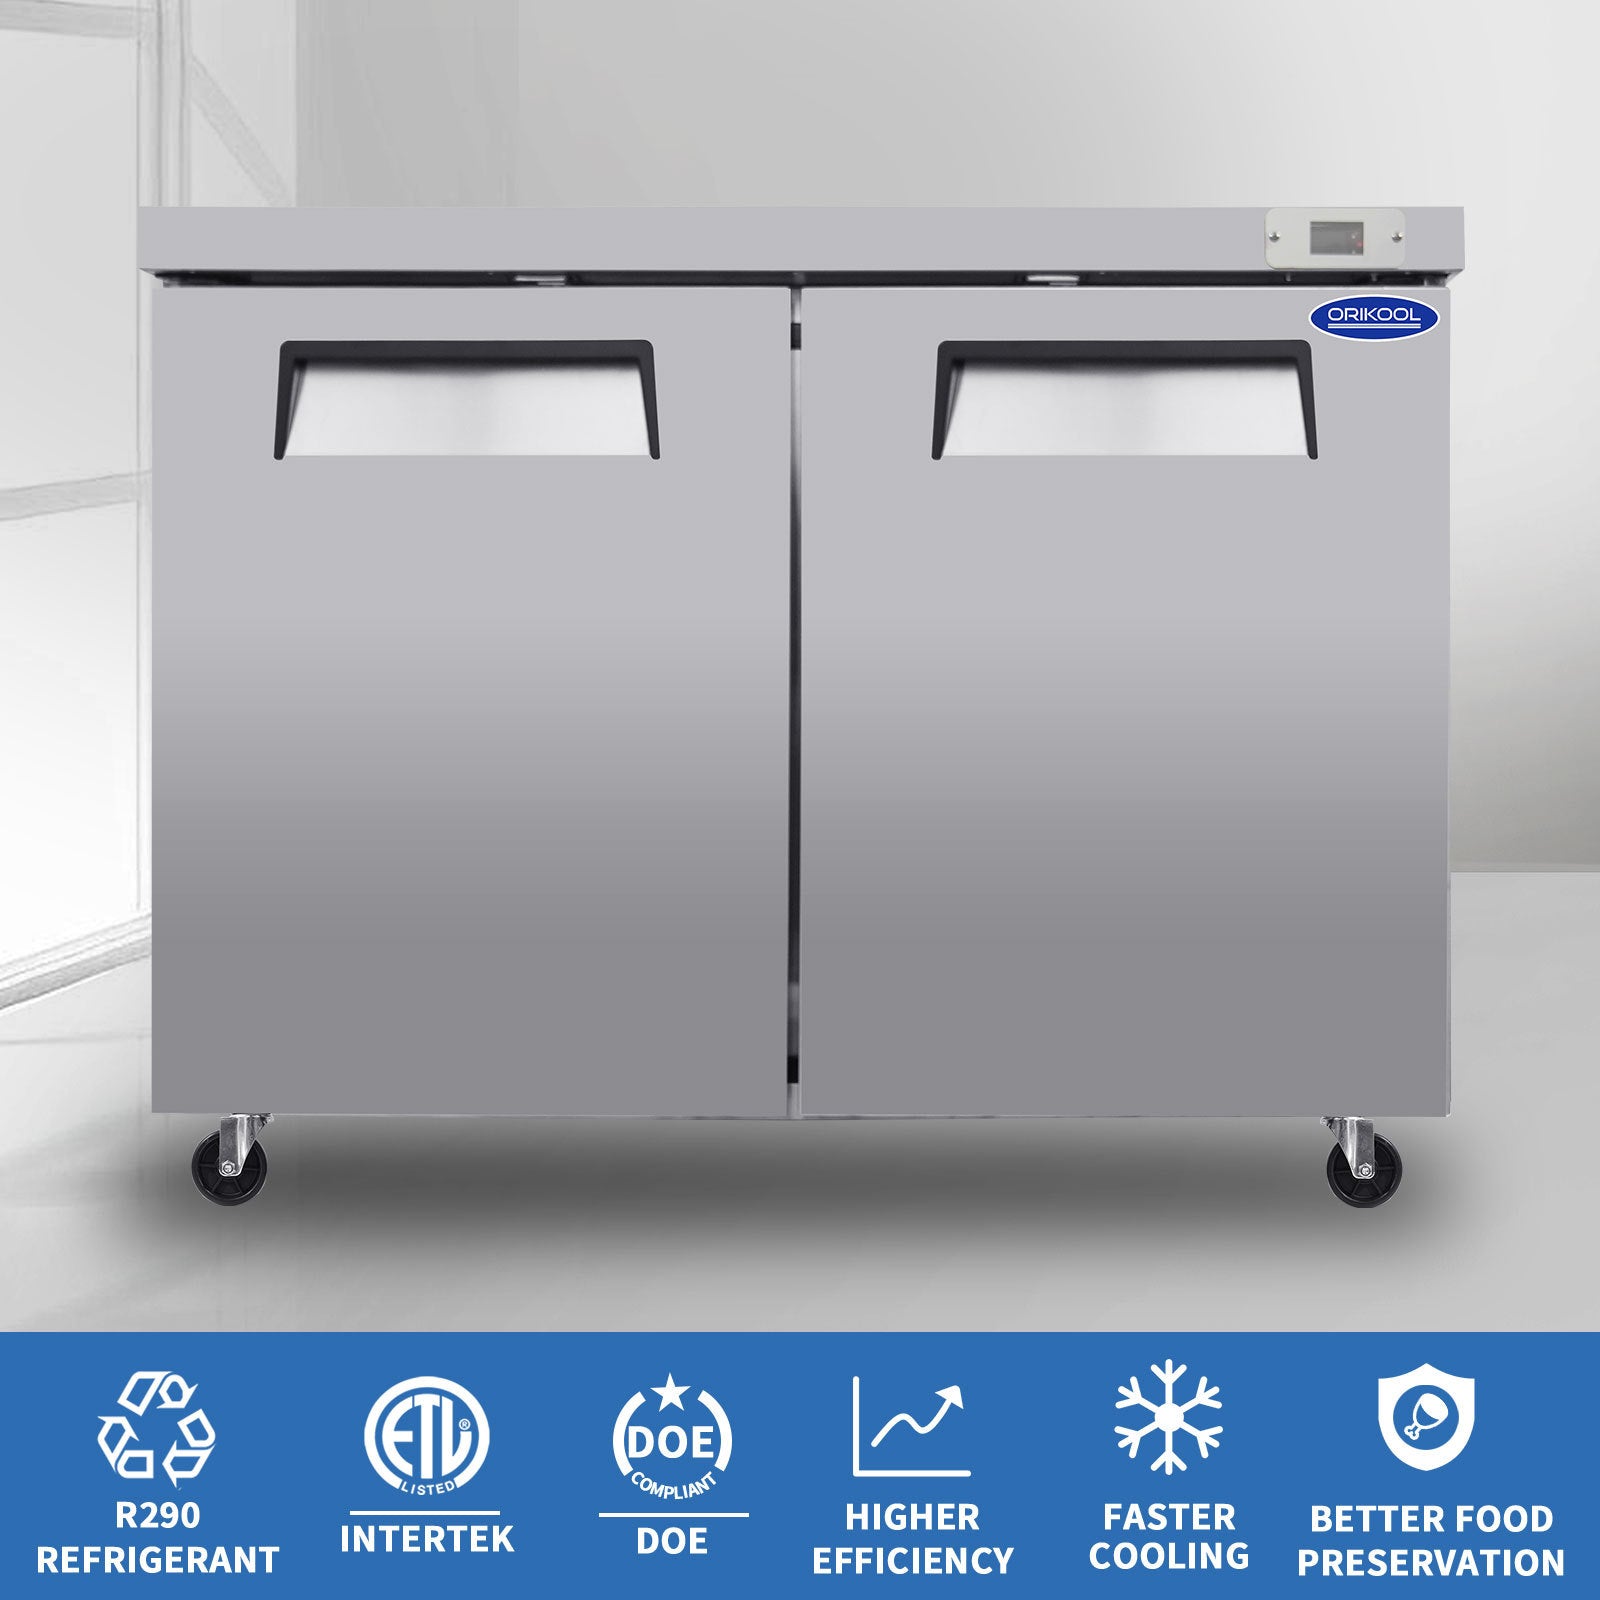 ORIKOOL 48" Commercial Under Counter Freezer 2 Door silver-stainless steel